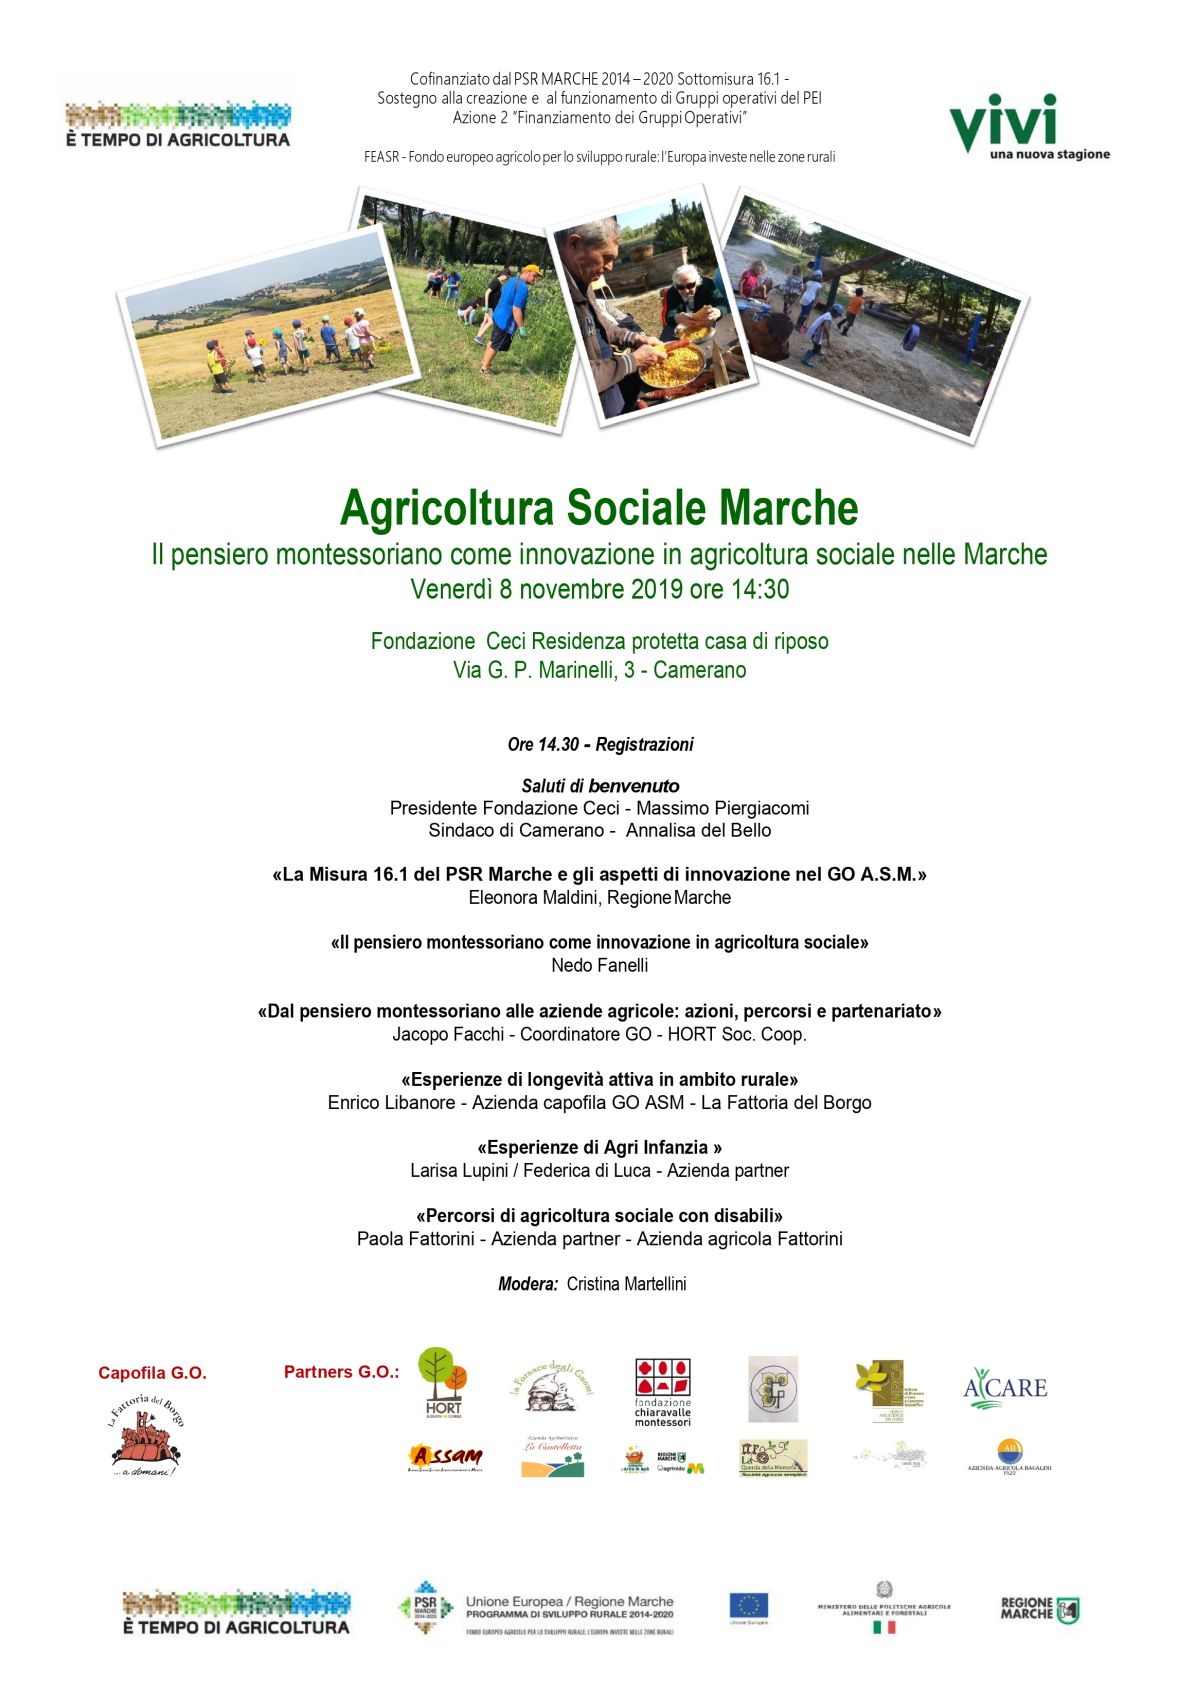 08/11/2019: Il pensiero montessoriano come innovazione in agricoltura sociale nelle marche